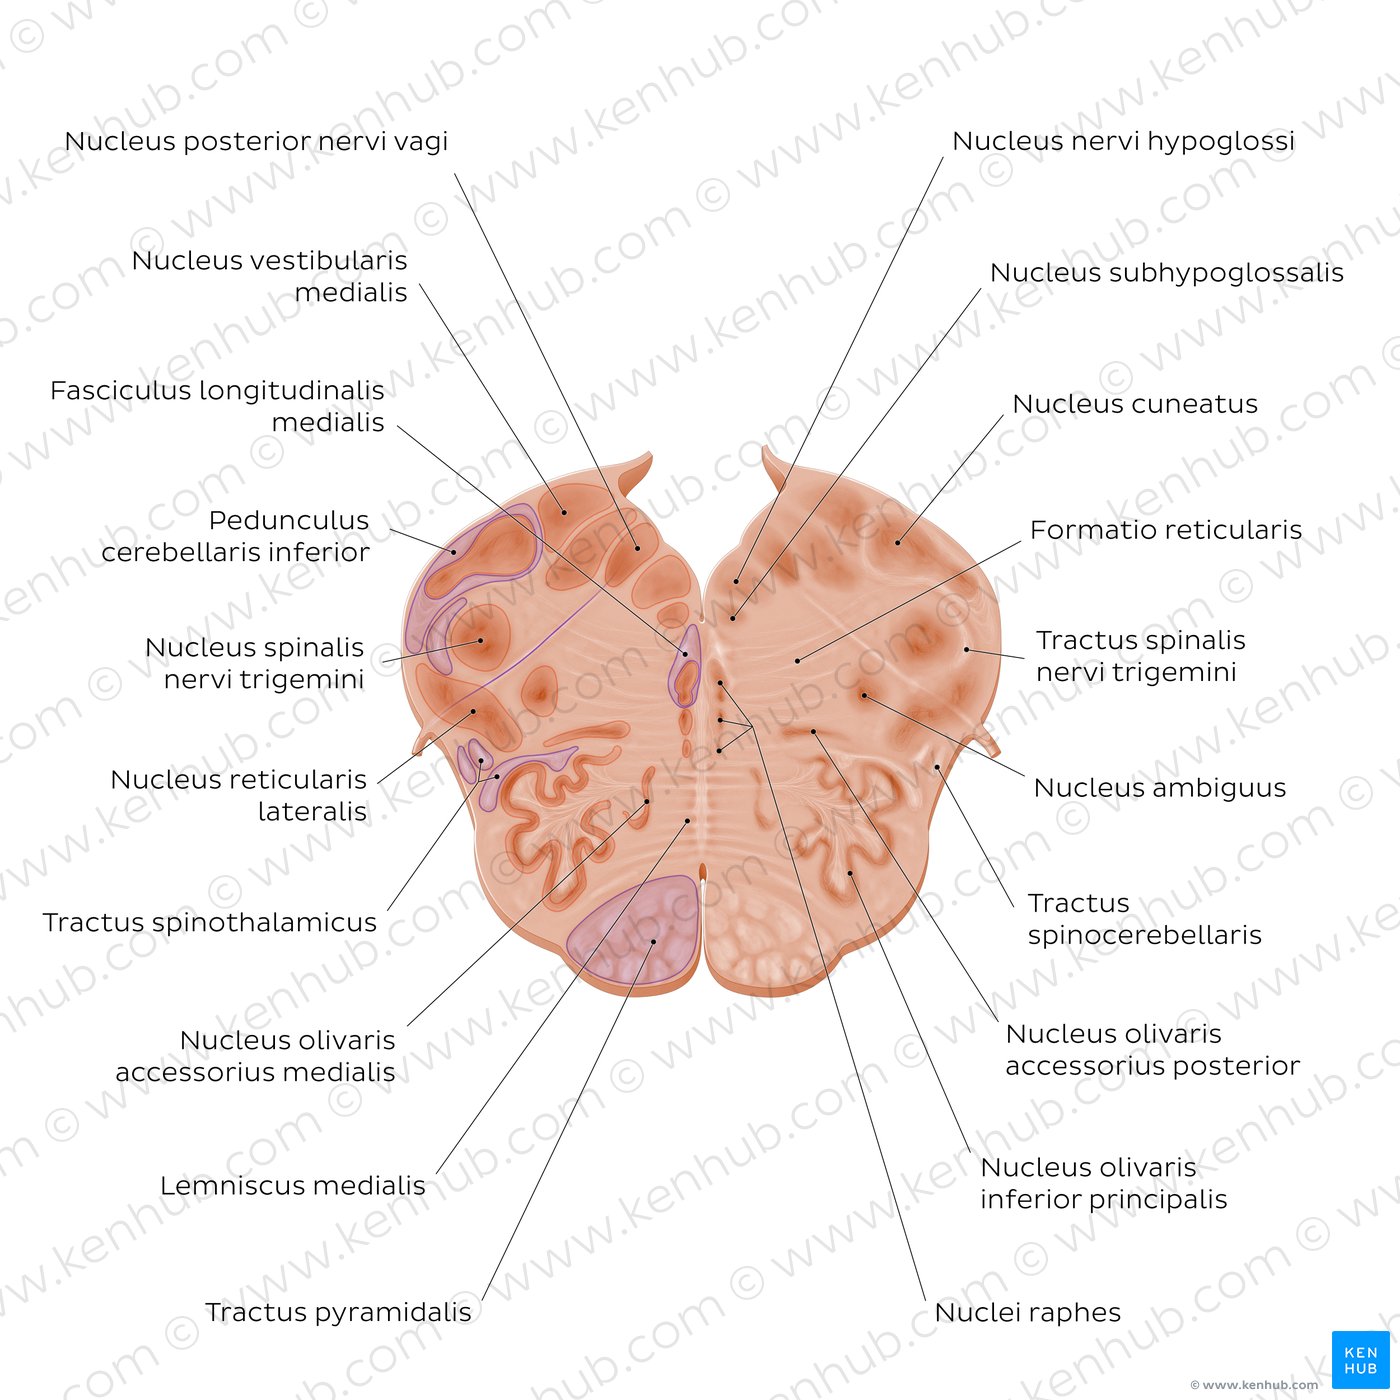 Medulla oblongata: Vagus nerve level